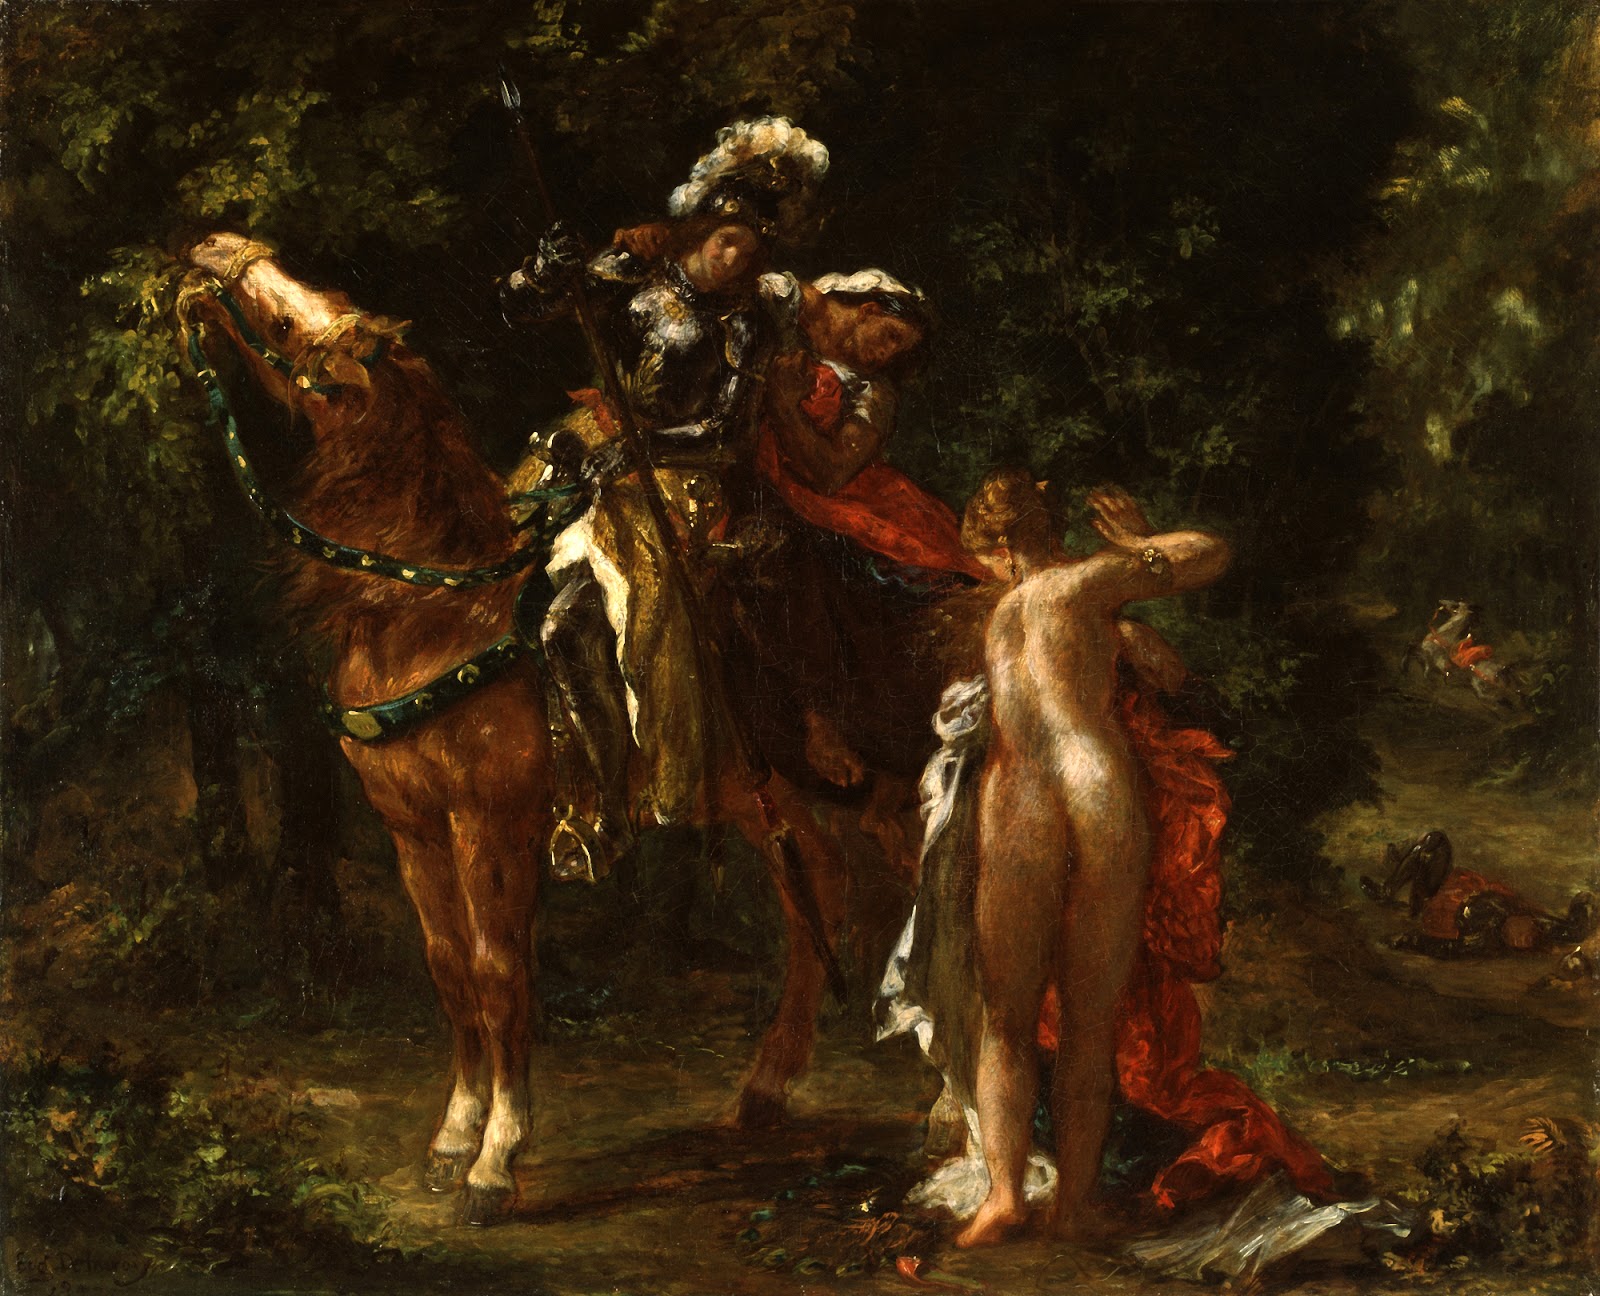 Eugene+Delacroix-1798-1863 (171).jpg